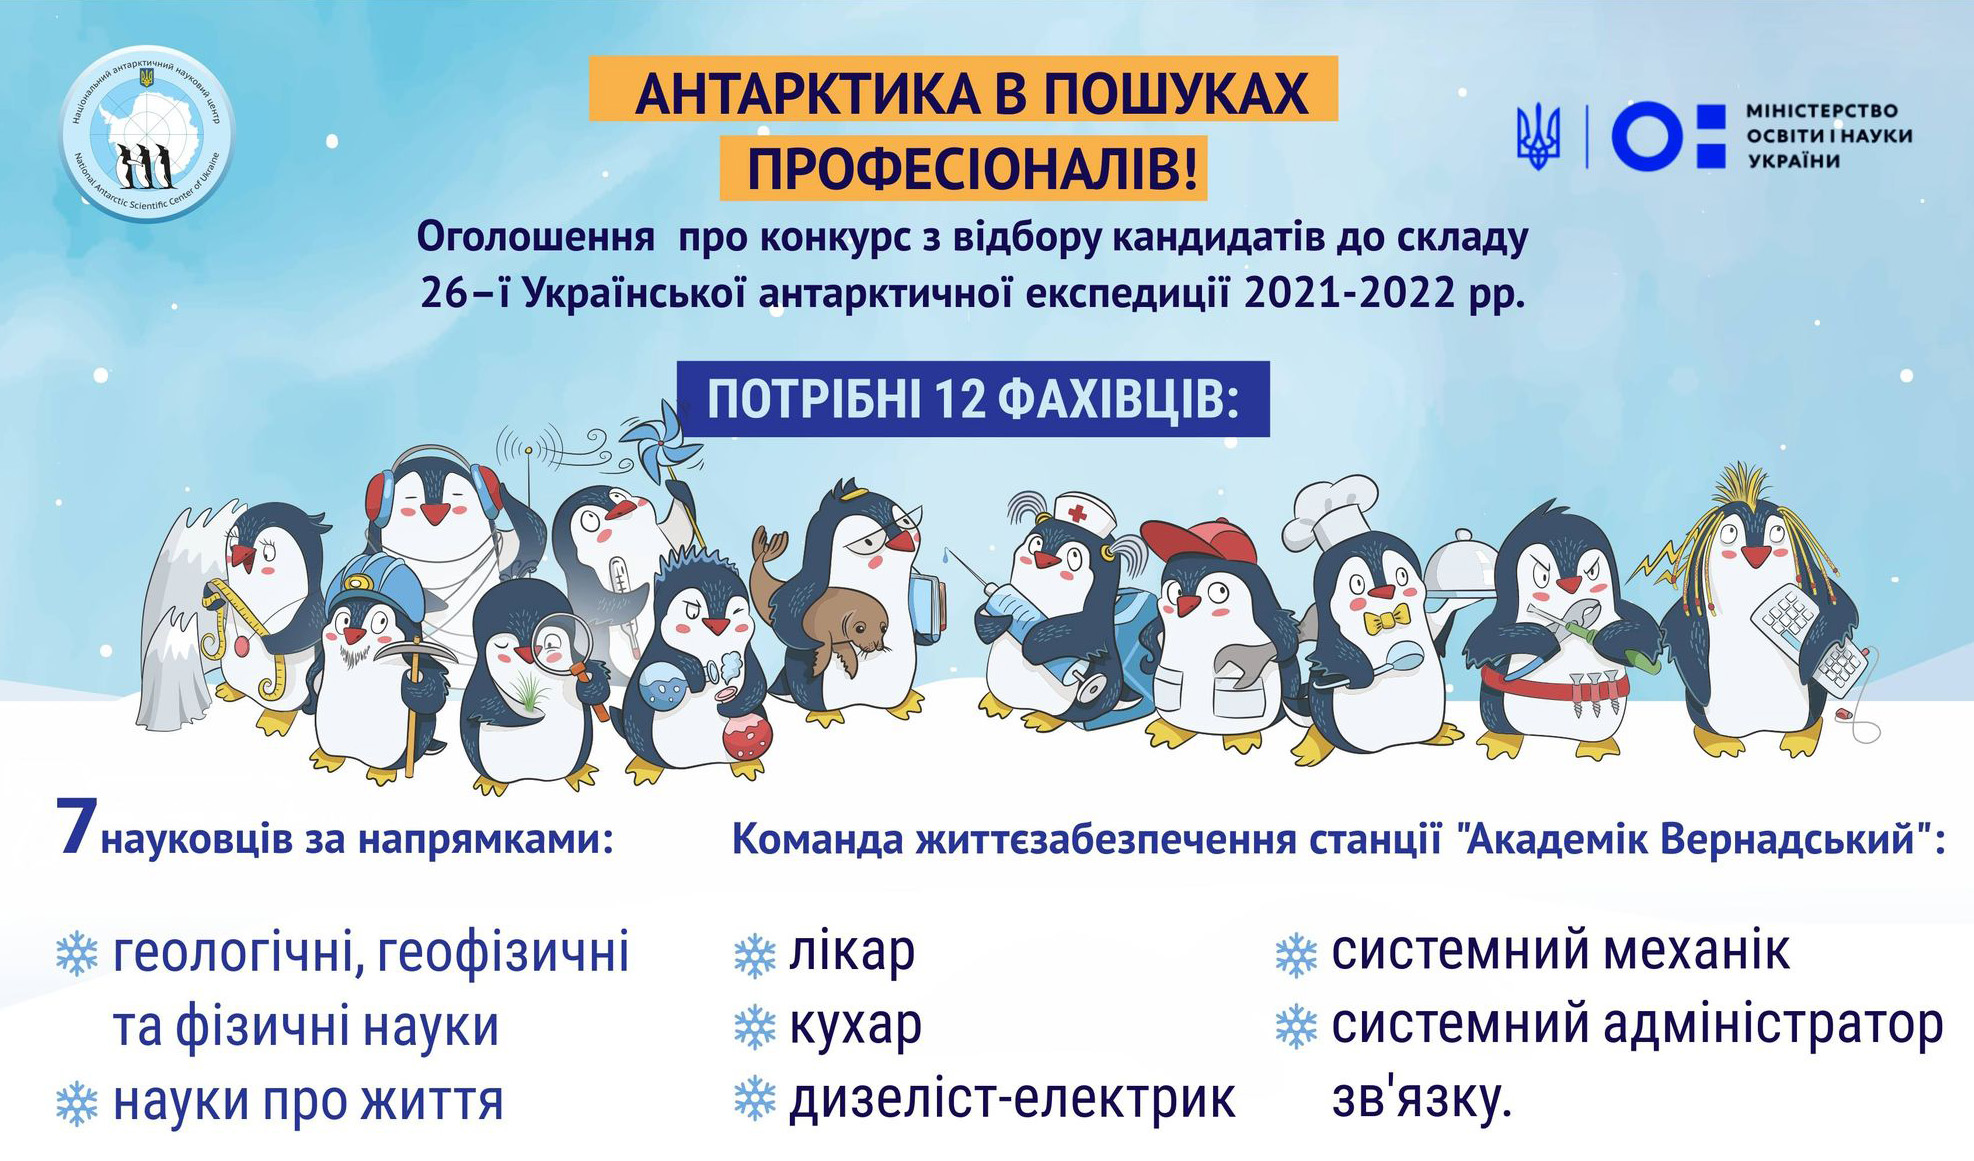 оголошення конкурсу з відбору команди 26-ї Української антарктичної експедиції